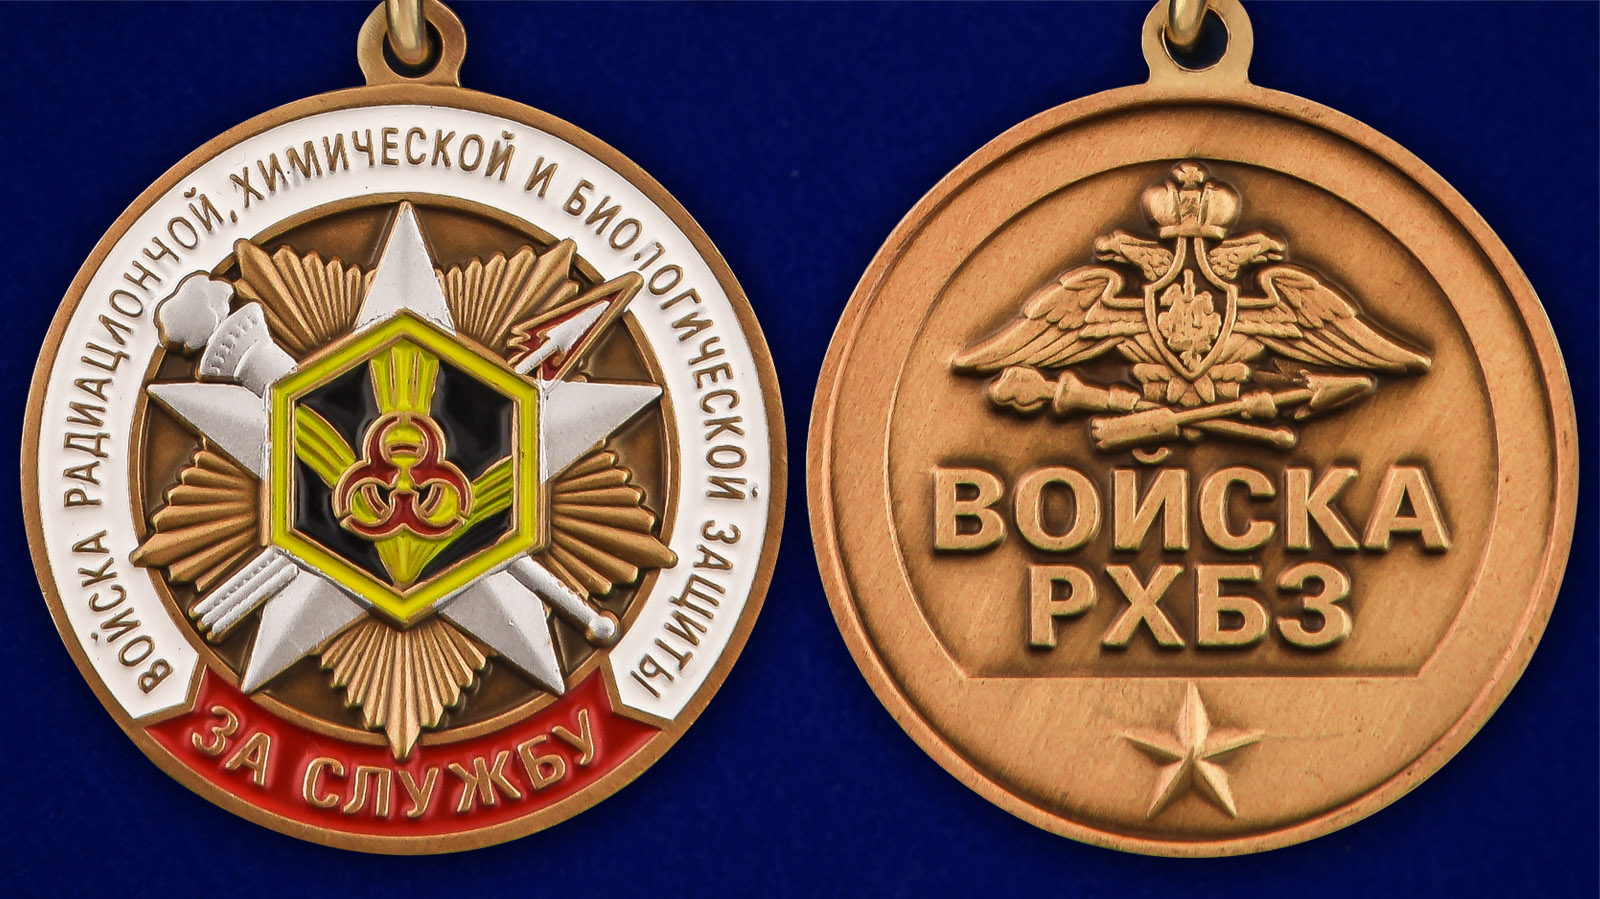 Памятная медаль "За службу в войсках РХБЗ" - аверс и реверс